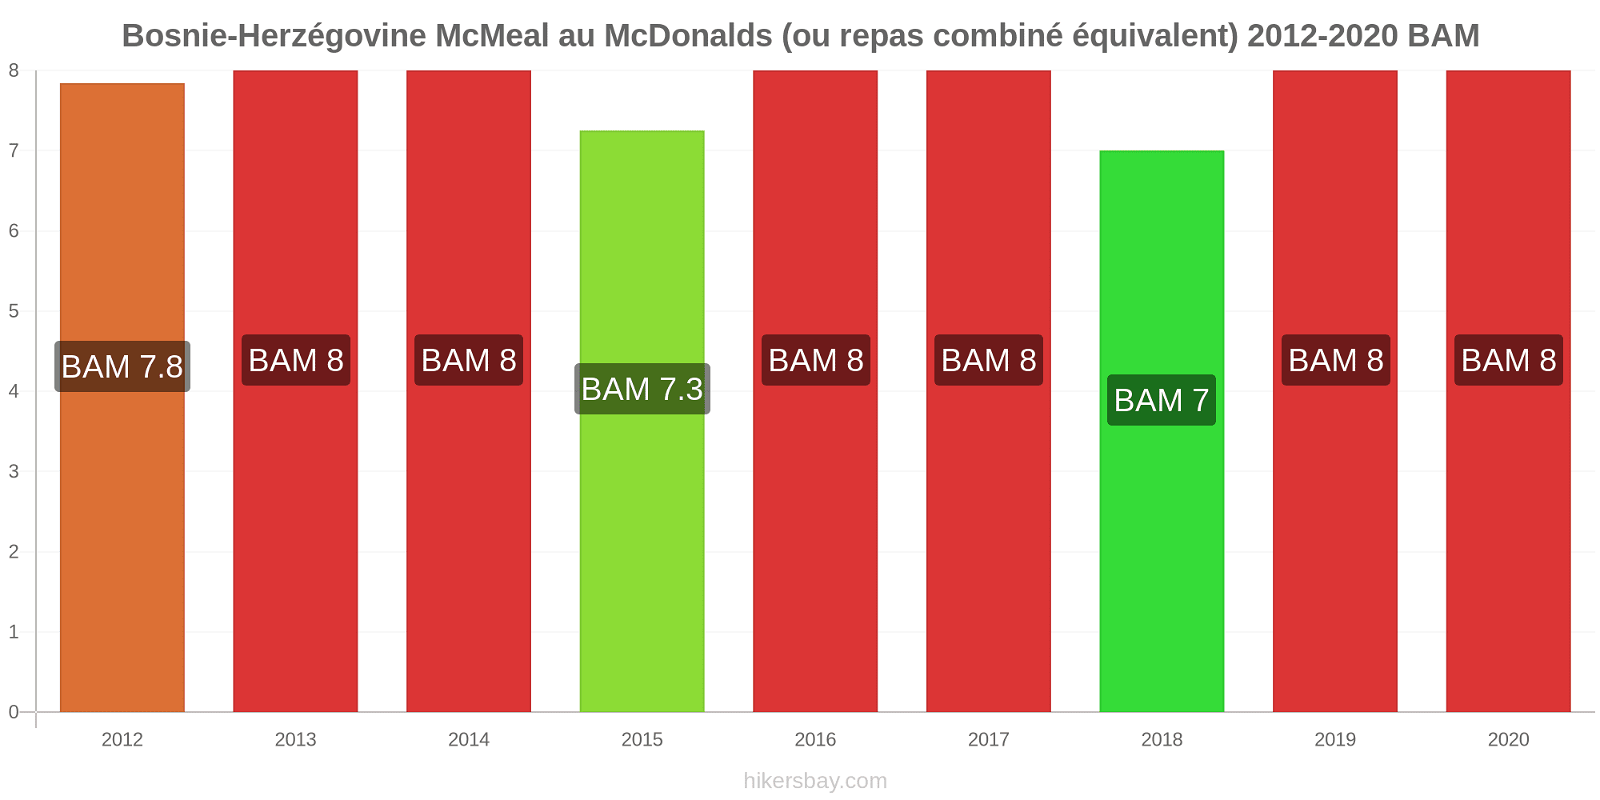 Bosnie-Herzégovine changements de prix McMeal à McDonald ' s (ou Combo équivalent tourteau) hikersbay.com